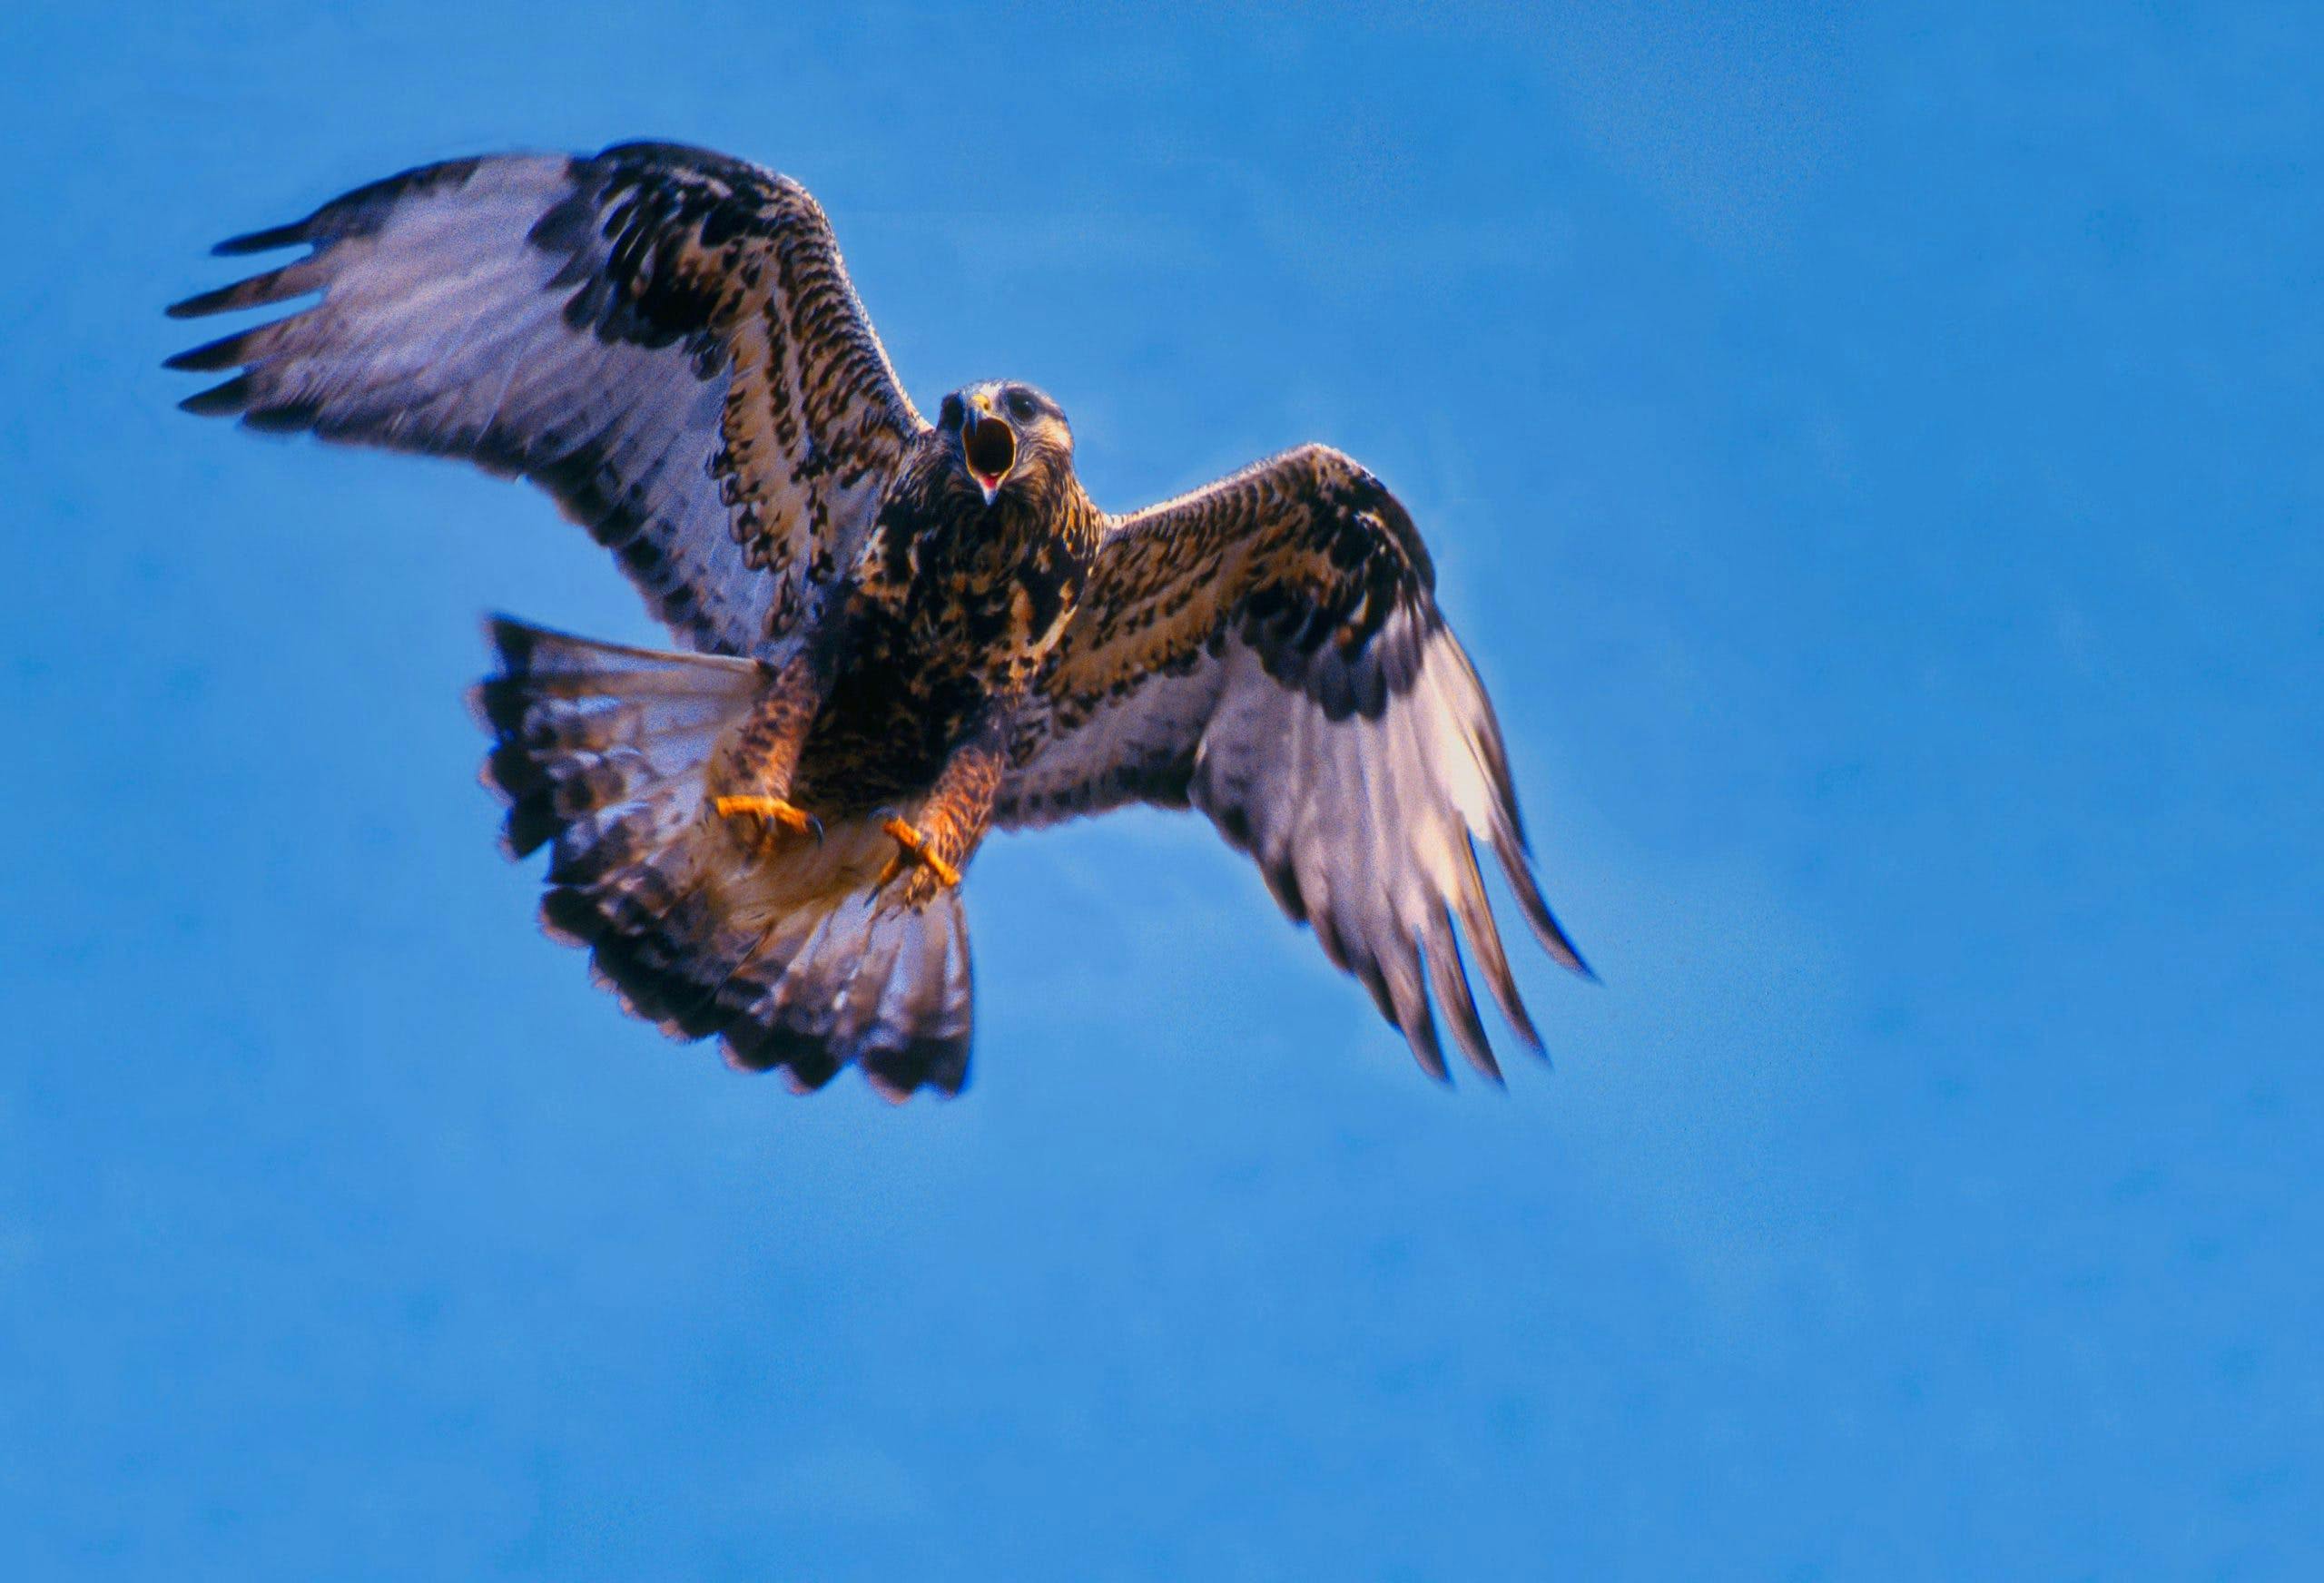 Rough-legged hawk flying in the air